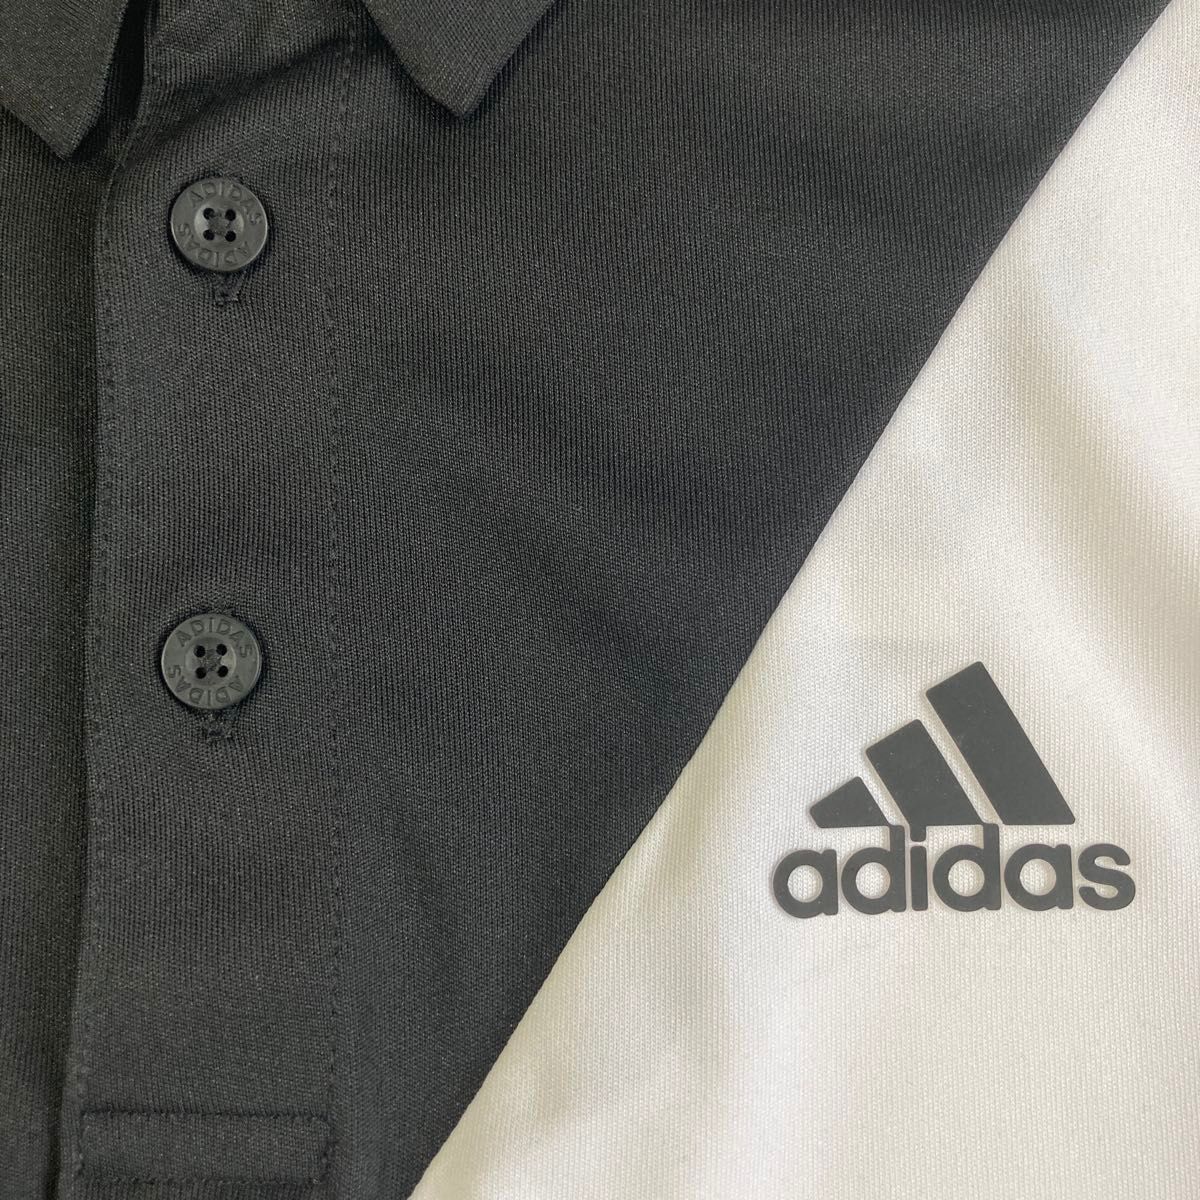 新品 アディダス adidas 半袖ポロシャツ ゴルフウェア 黒白 Mサイズ 速乾 スリーストライプ オシャレ 黒白 吸水速乾 